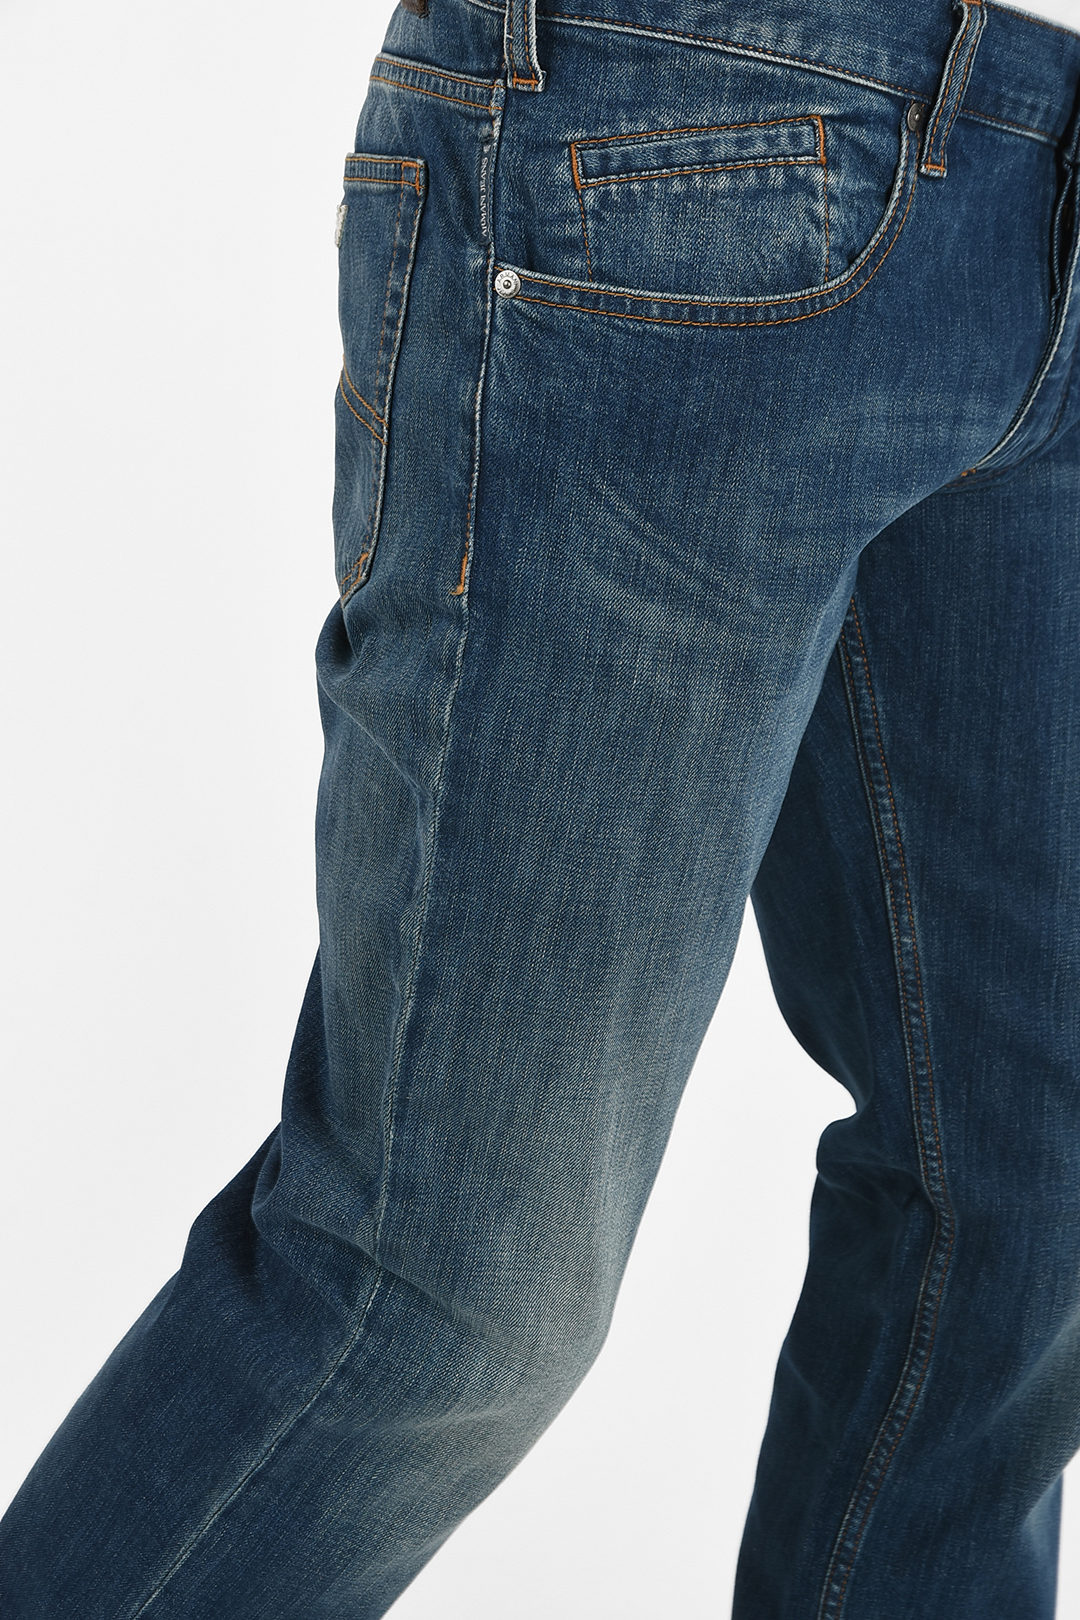 samling fumle Dyster Armani ARMANI JEANS 19cm Slim Fit J23 Jeans L34 herren - Glamood Outlet